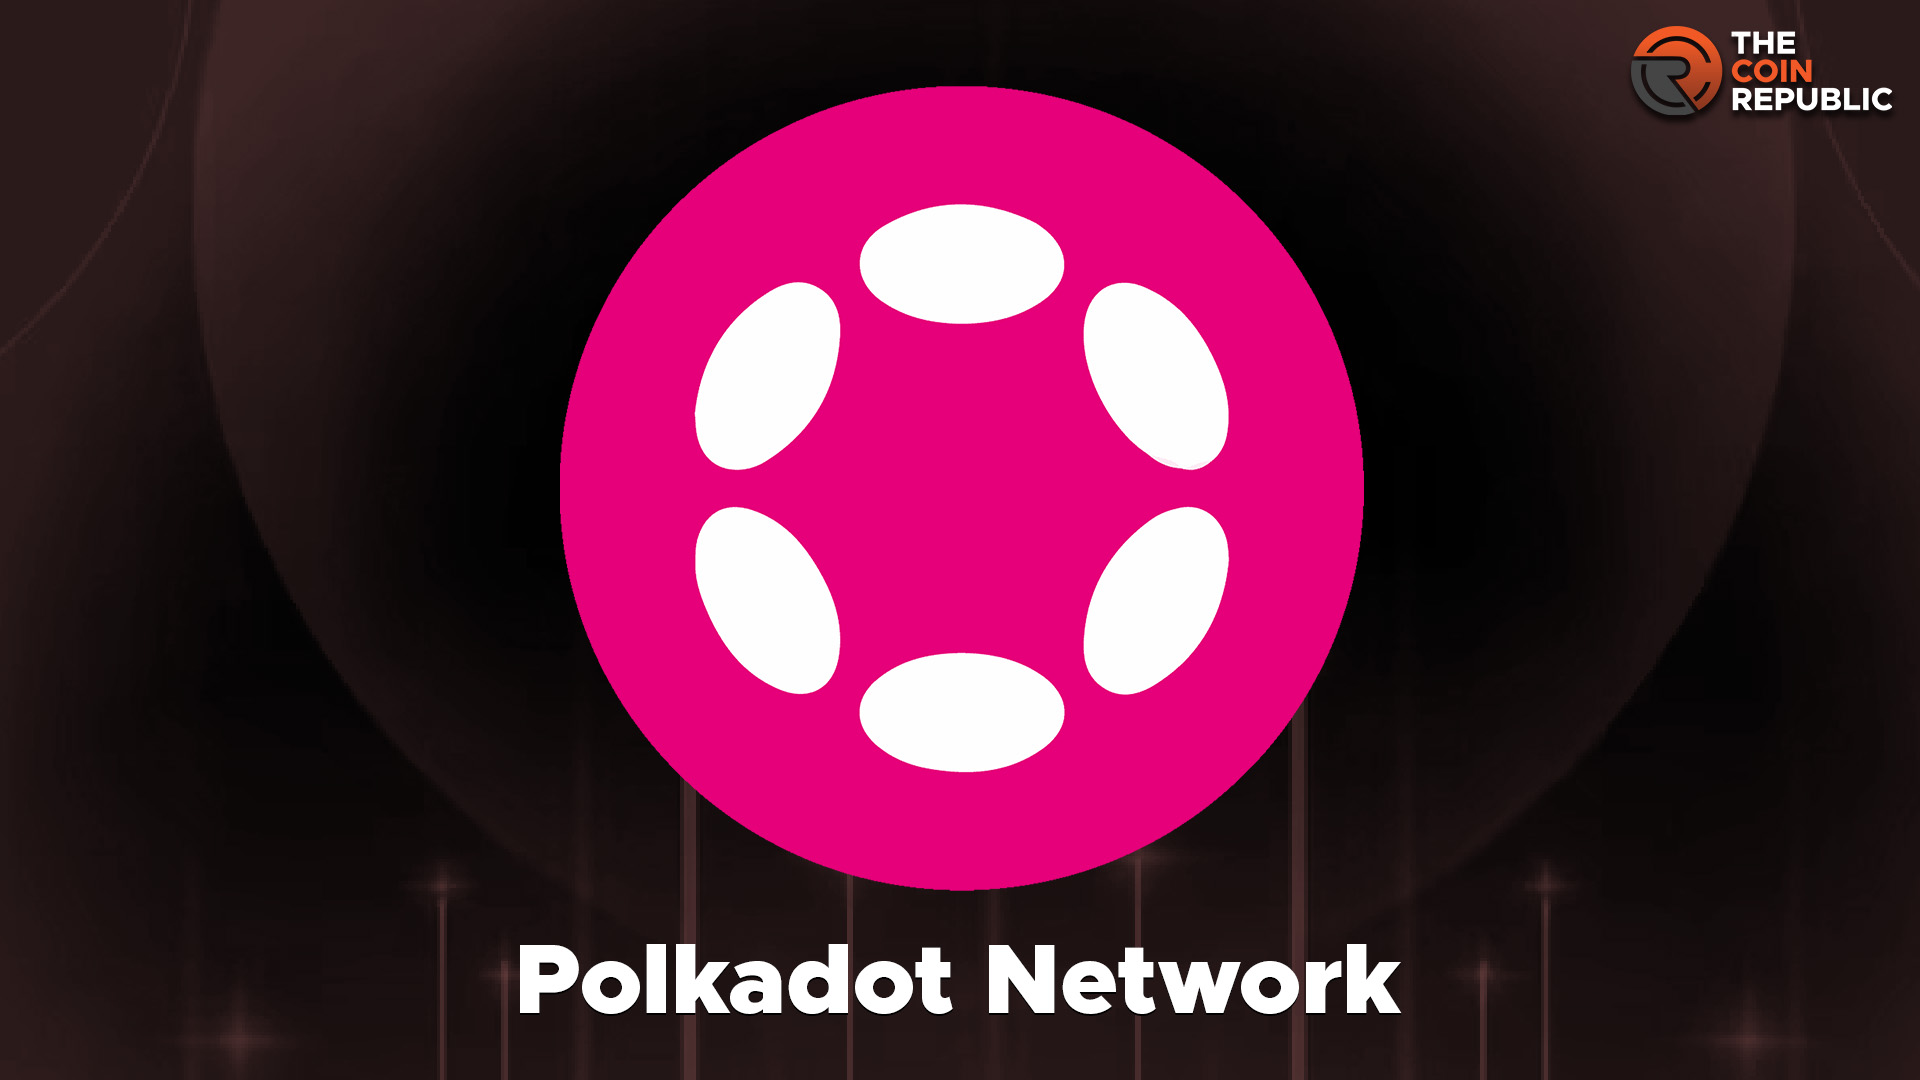 Polkadot Q2 ‘23 Update: An Unprecedented Scaling of Network